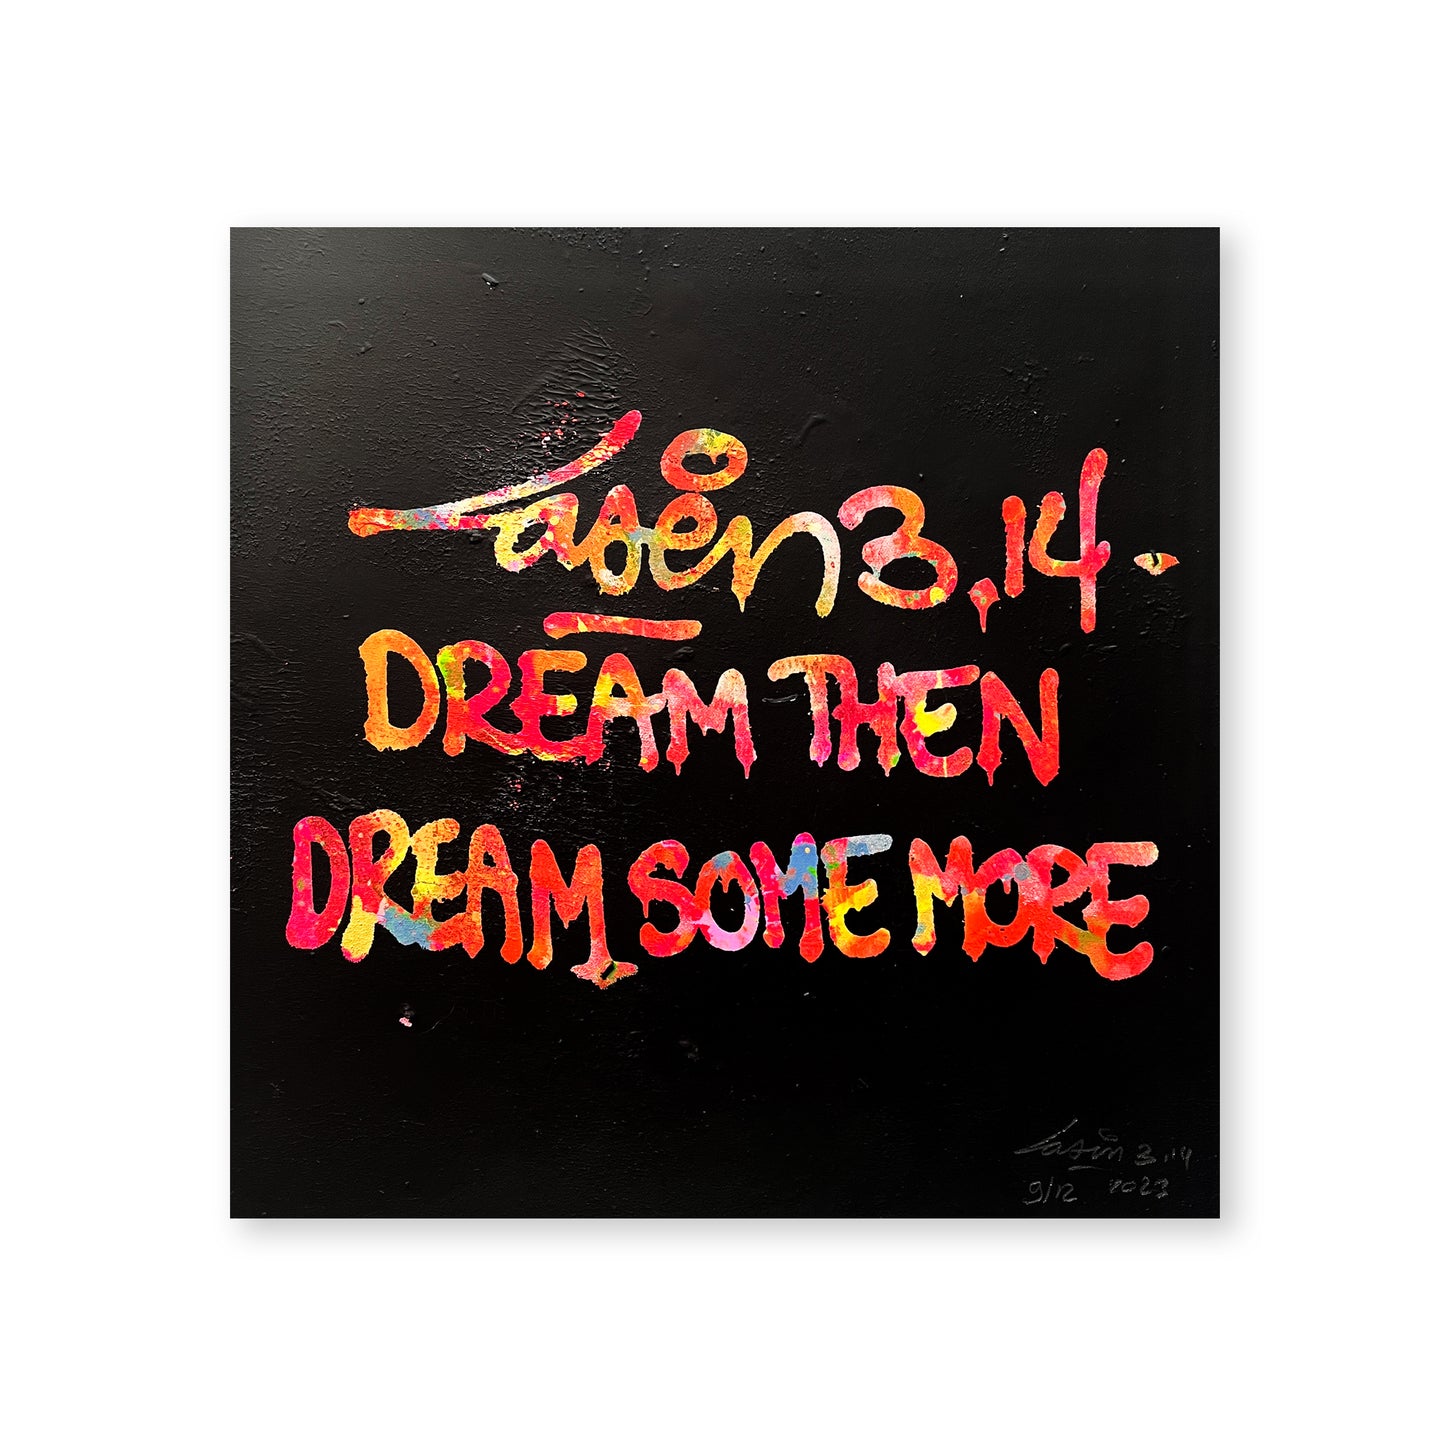 Dream Then Dream Some More 9/12